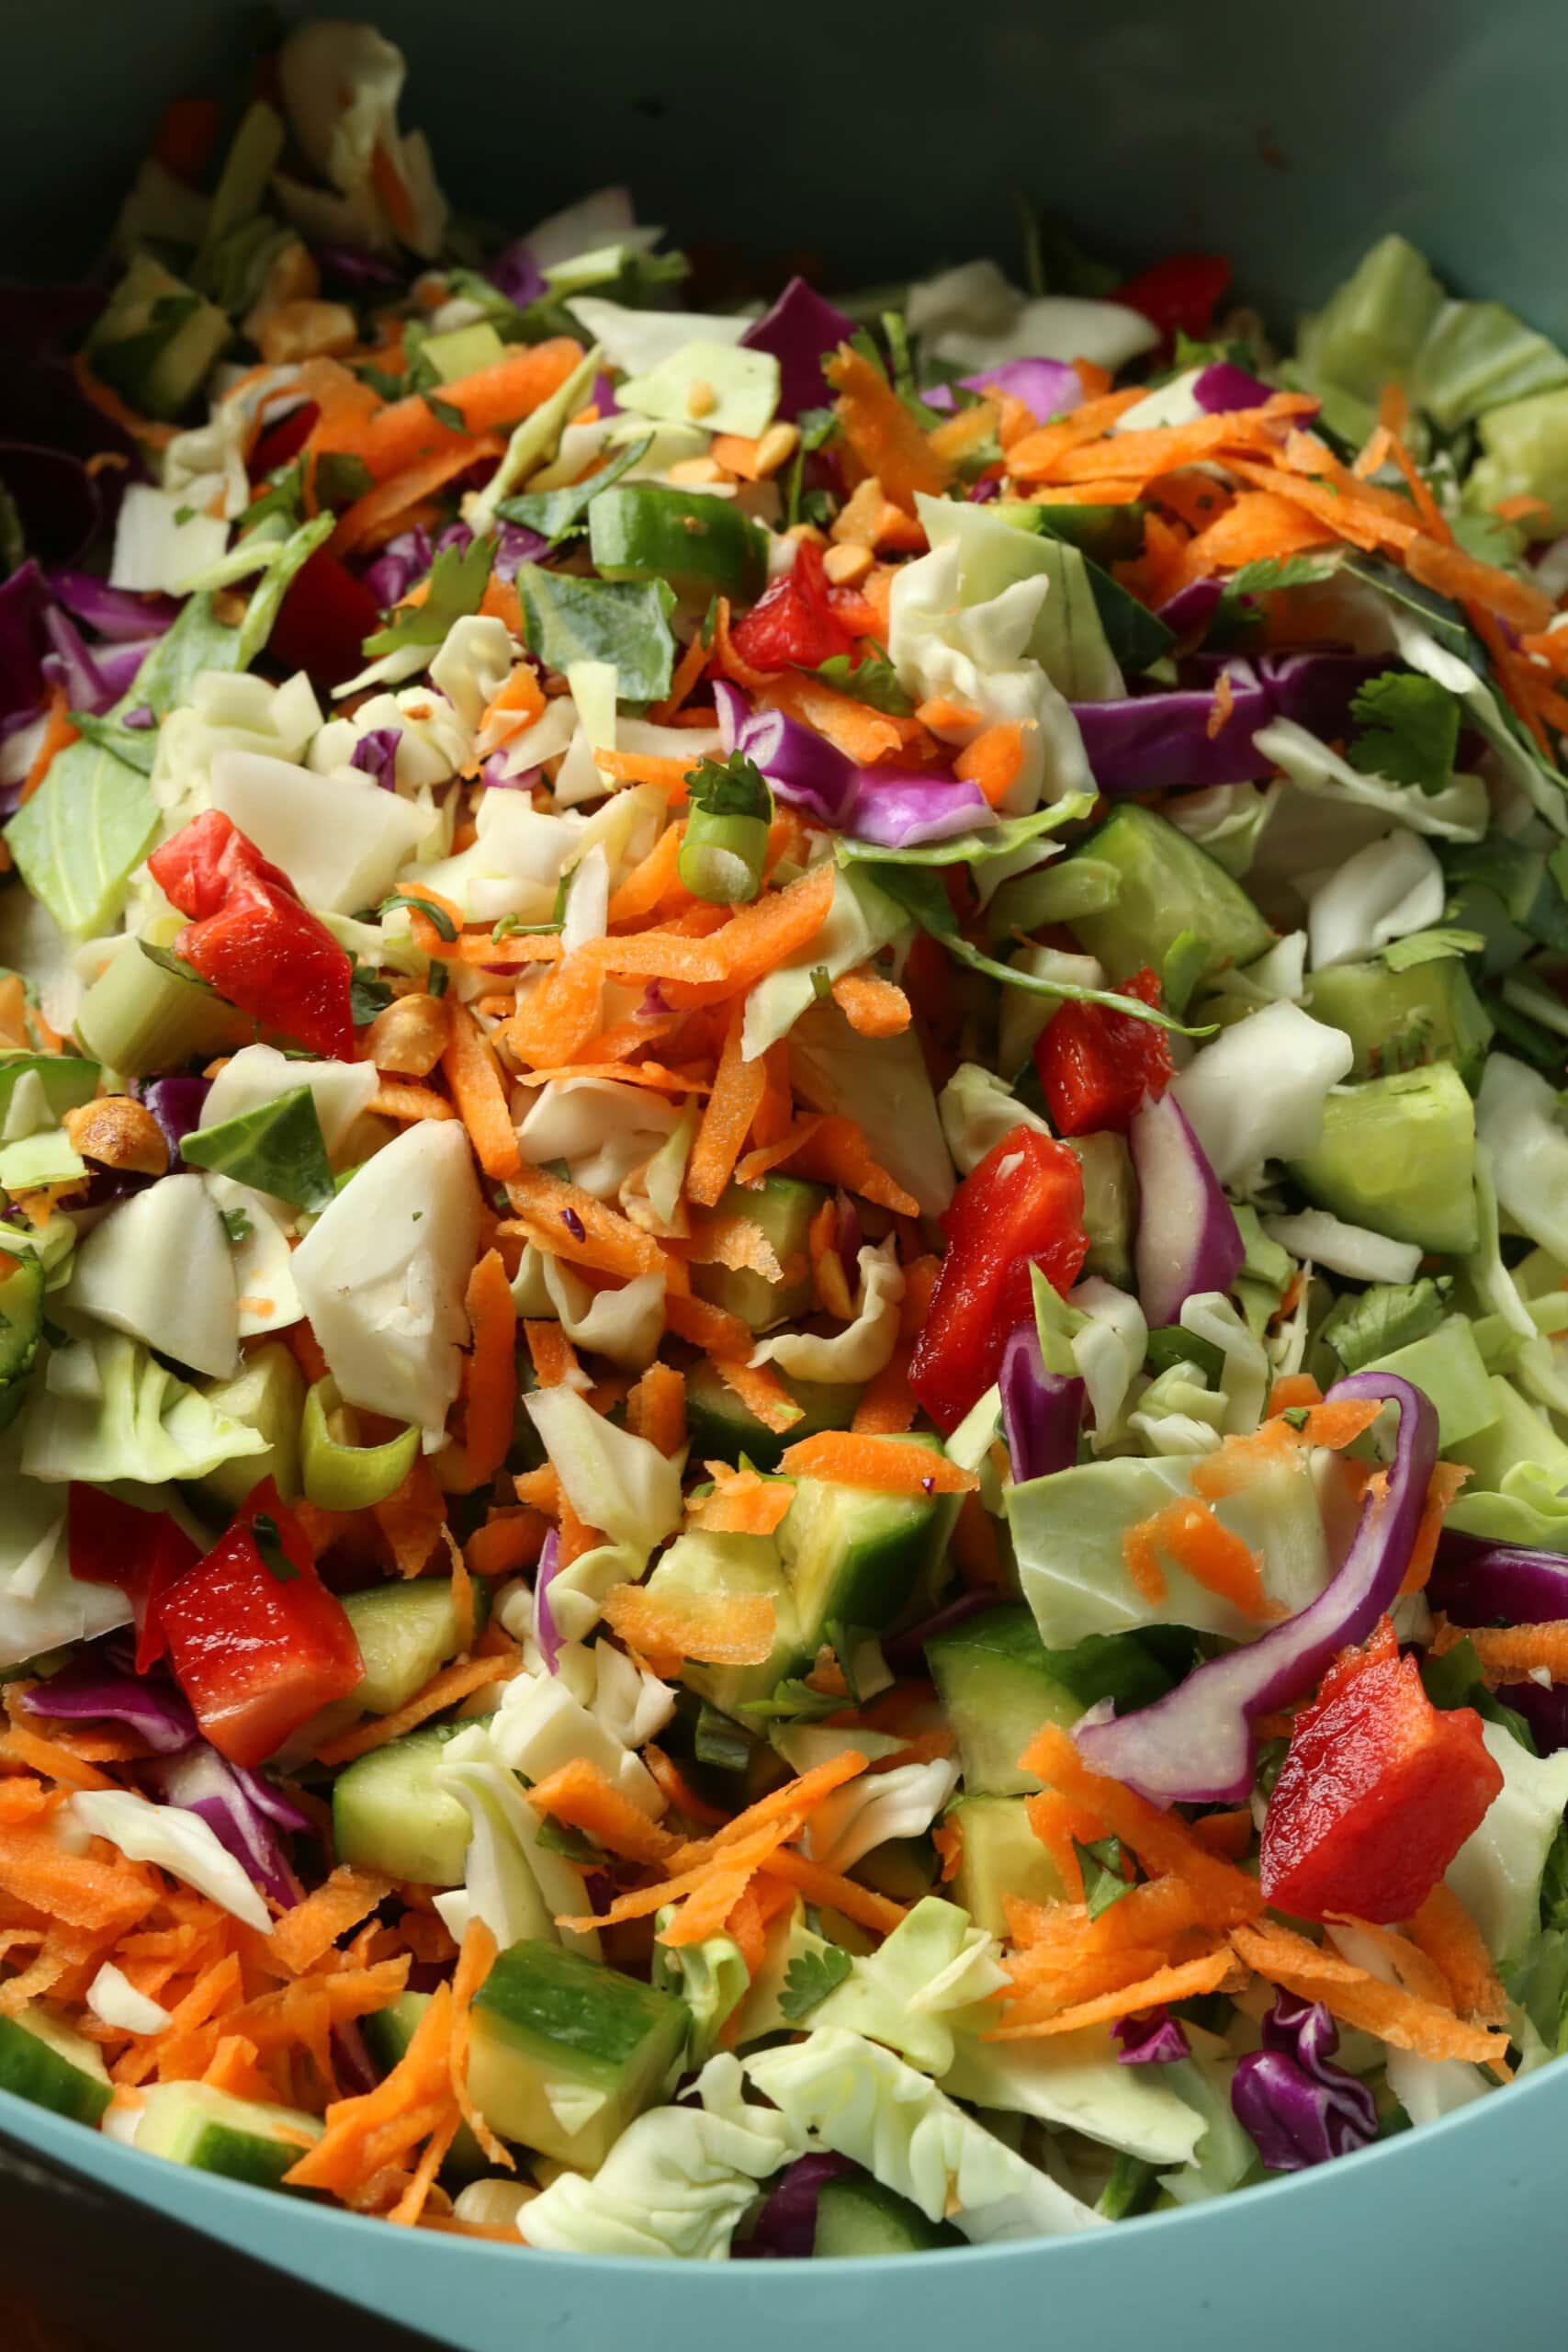 Tampilan dekat bahan salad Rainbow Crunch digabungkan dalam mangkuk.